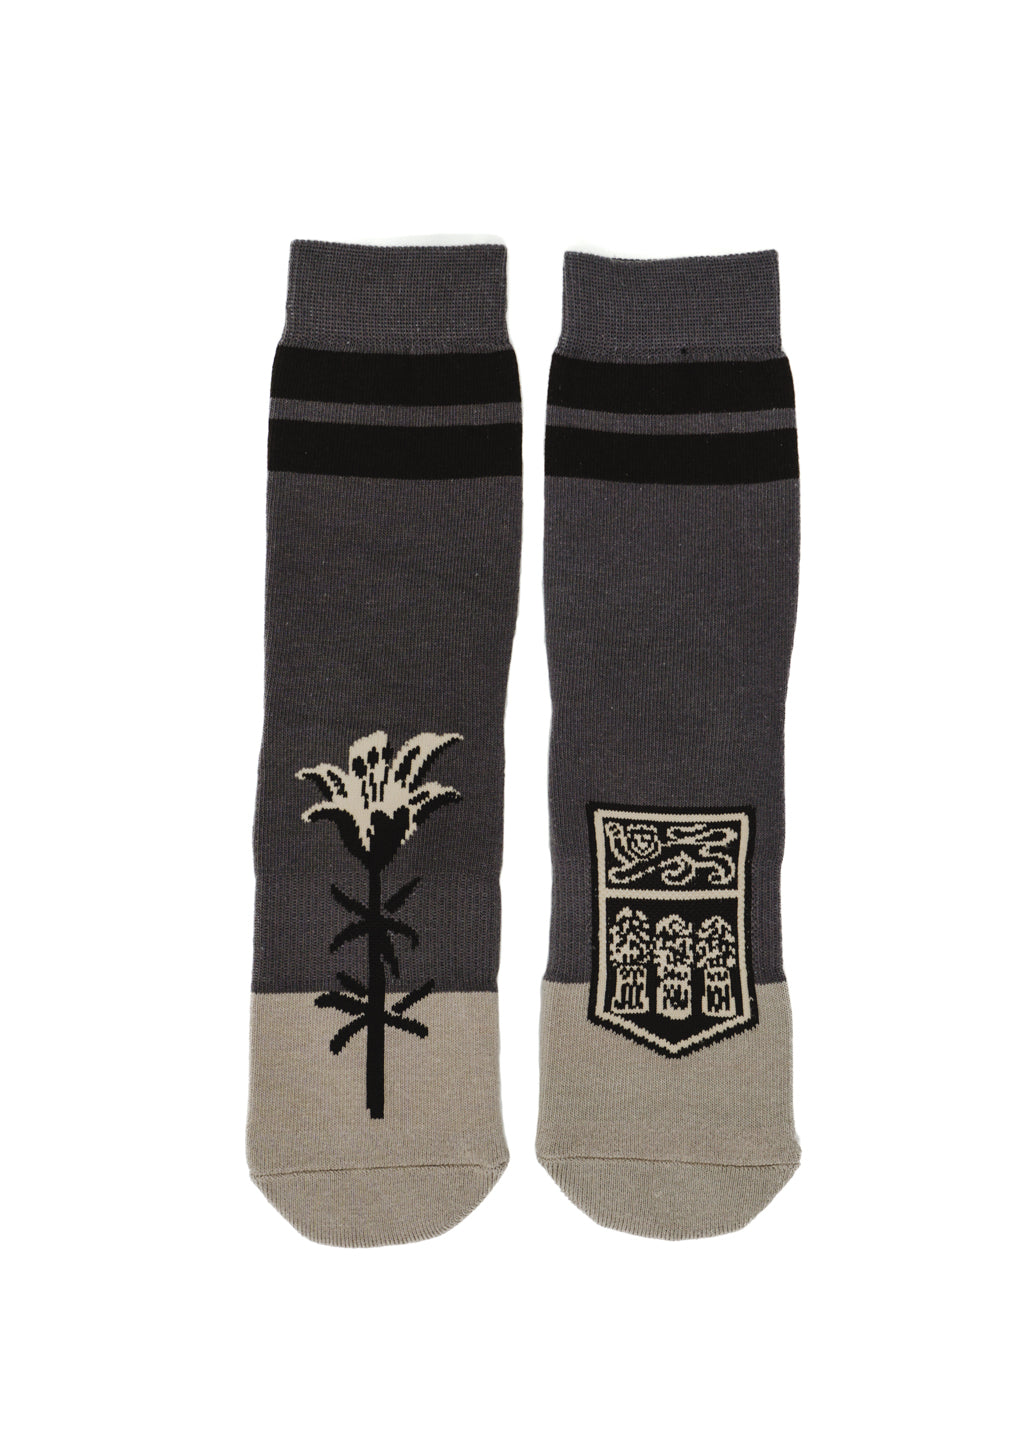 Crest Socks | Grey Tones - Hardpressed Print Studio Inc.